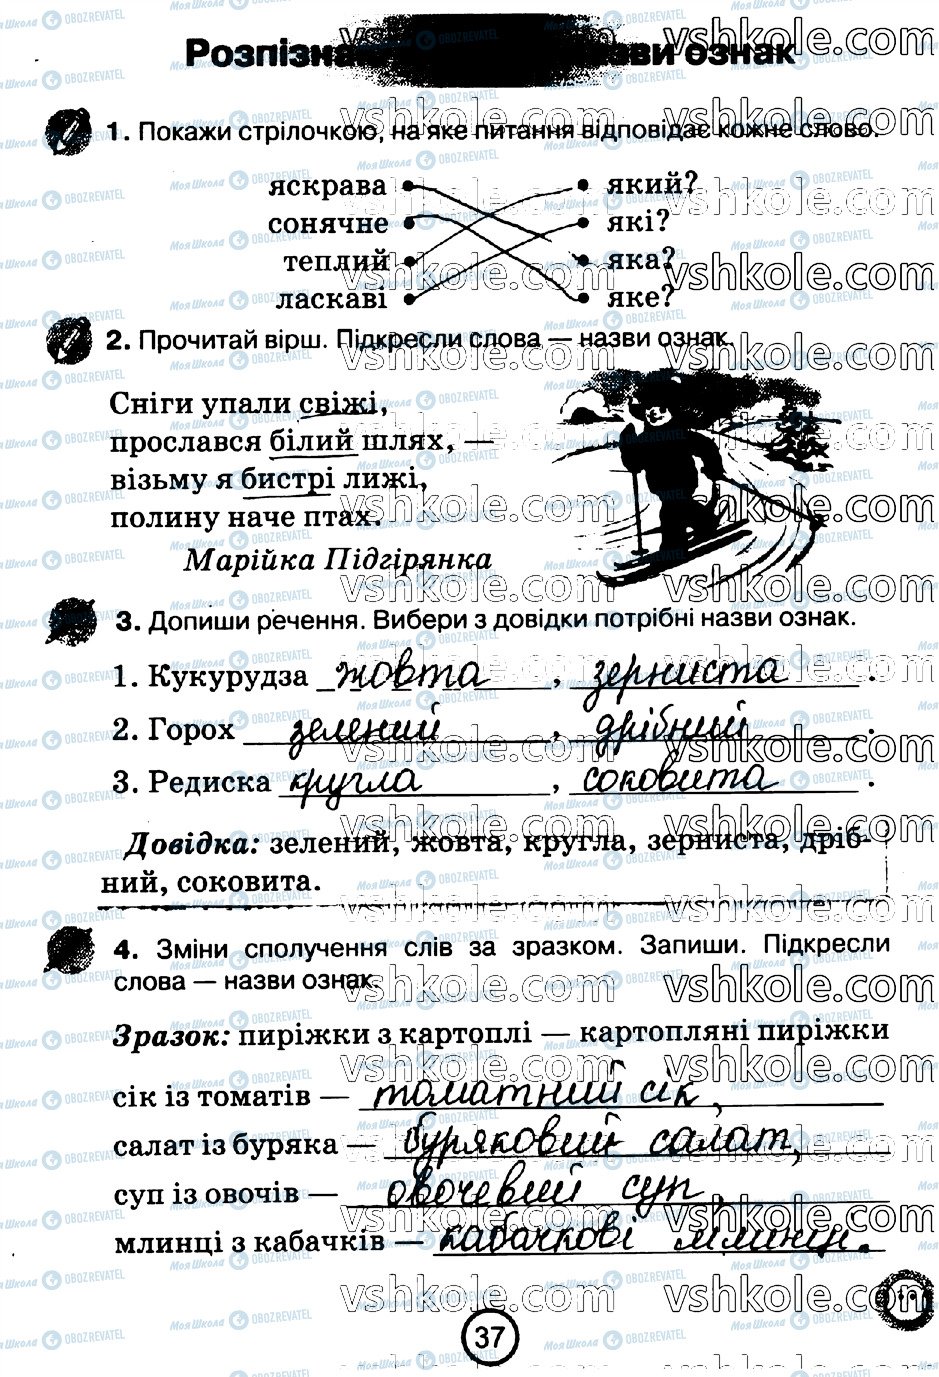 ГДЗ Укр мова 2 класс страница стр37